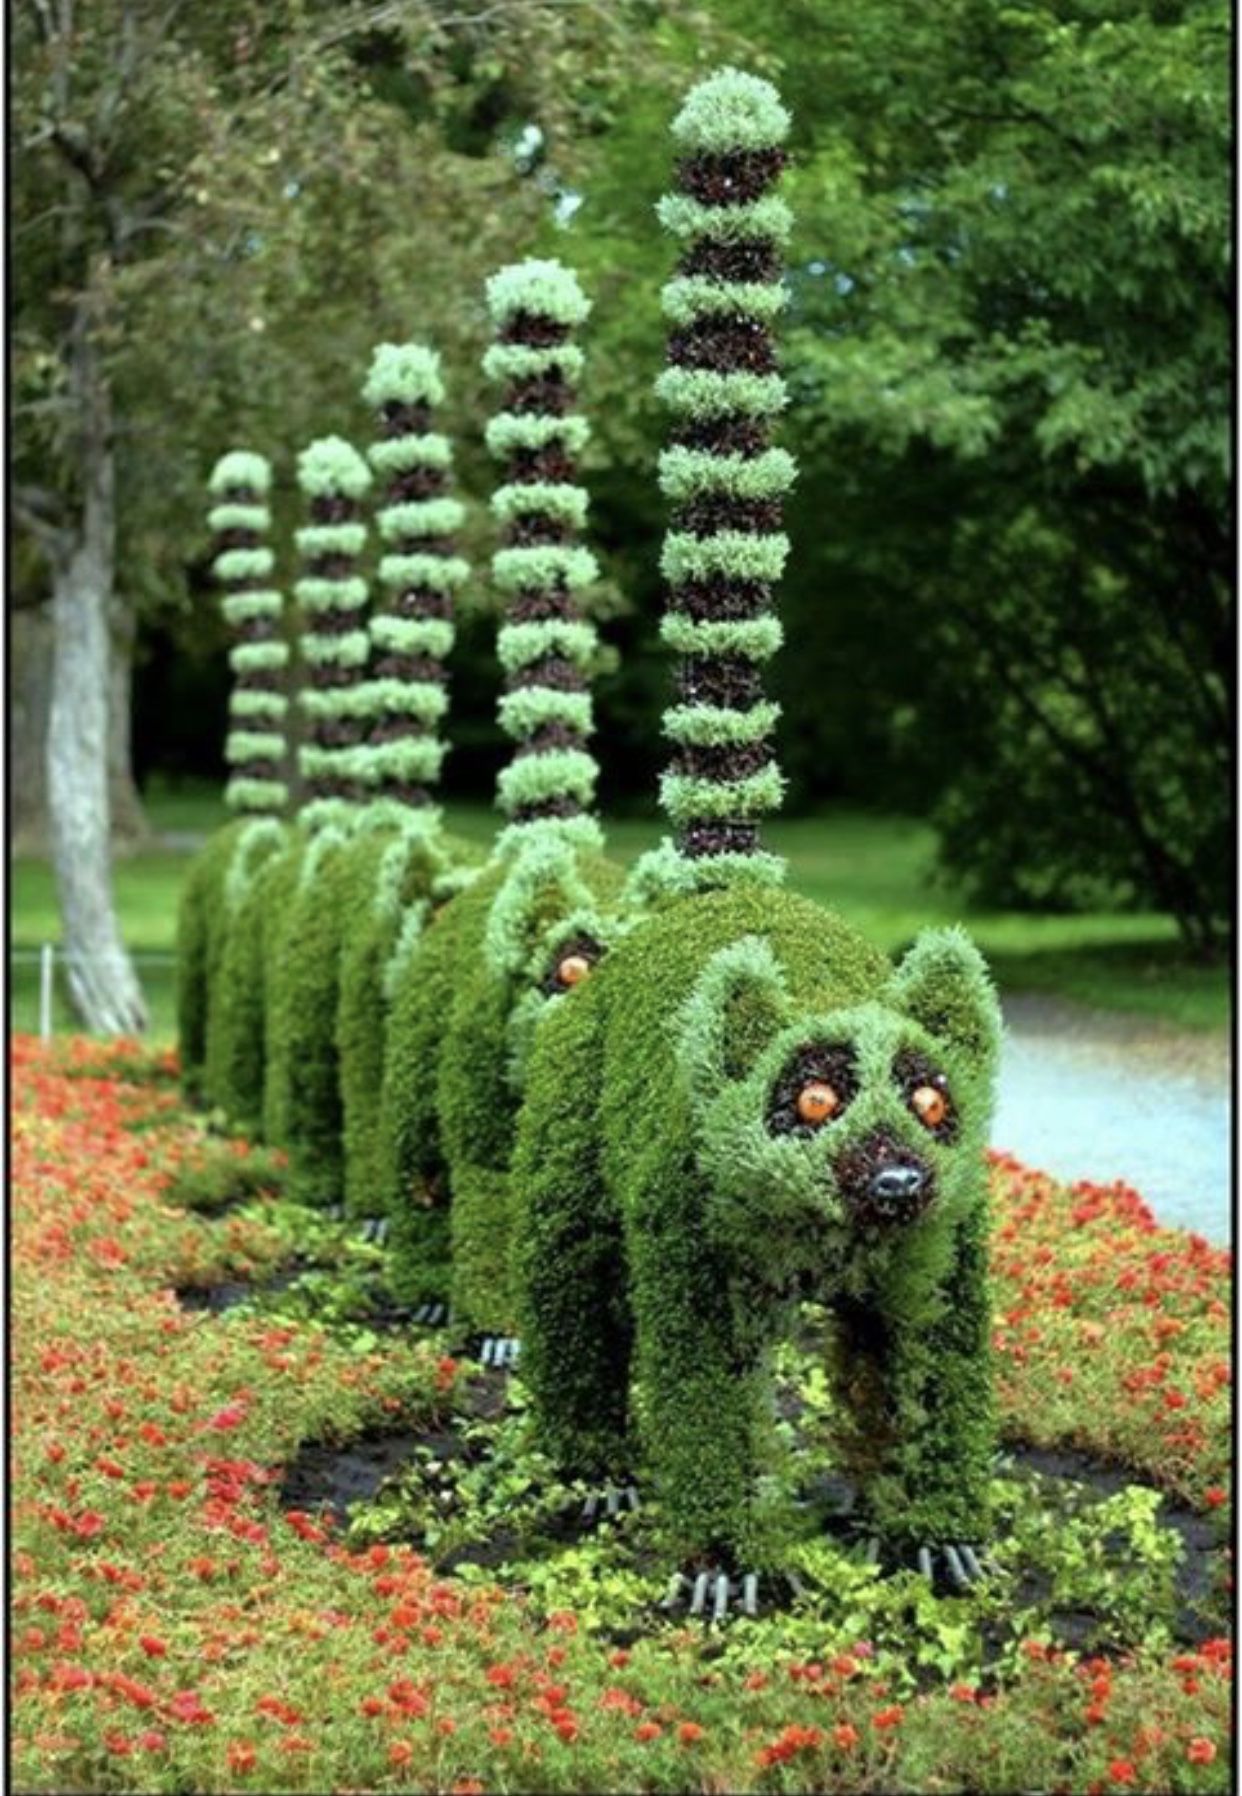 Bourton House Topiary Garden